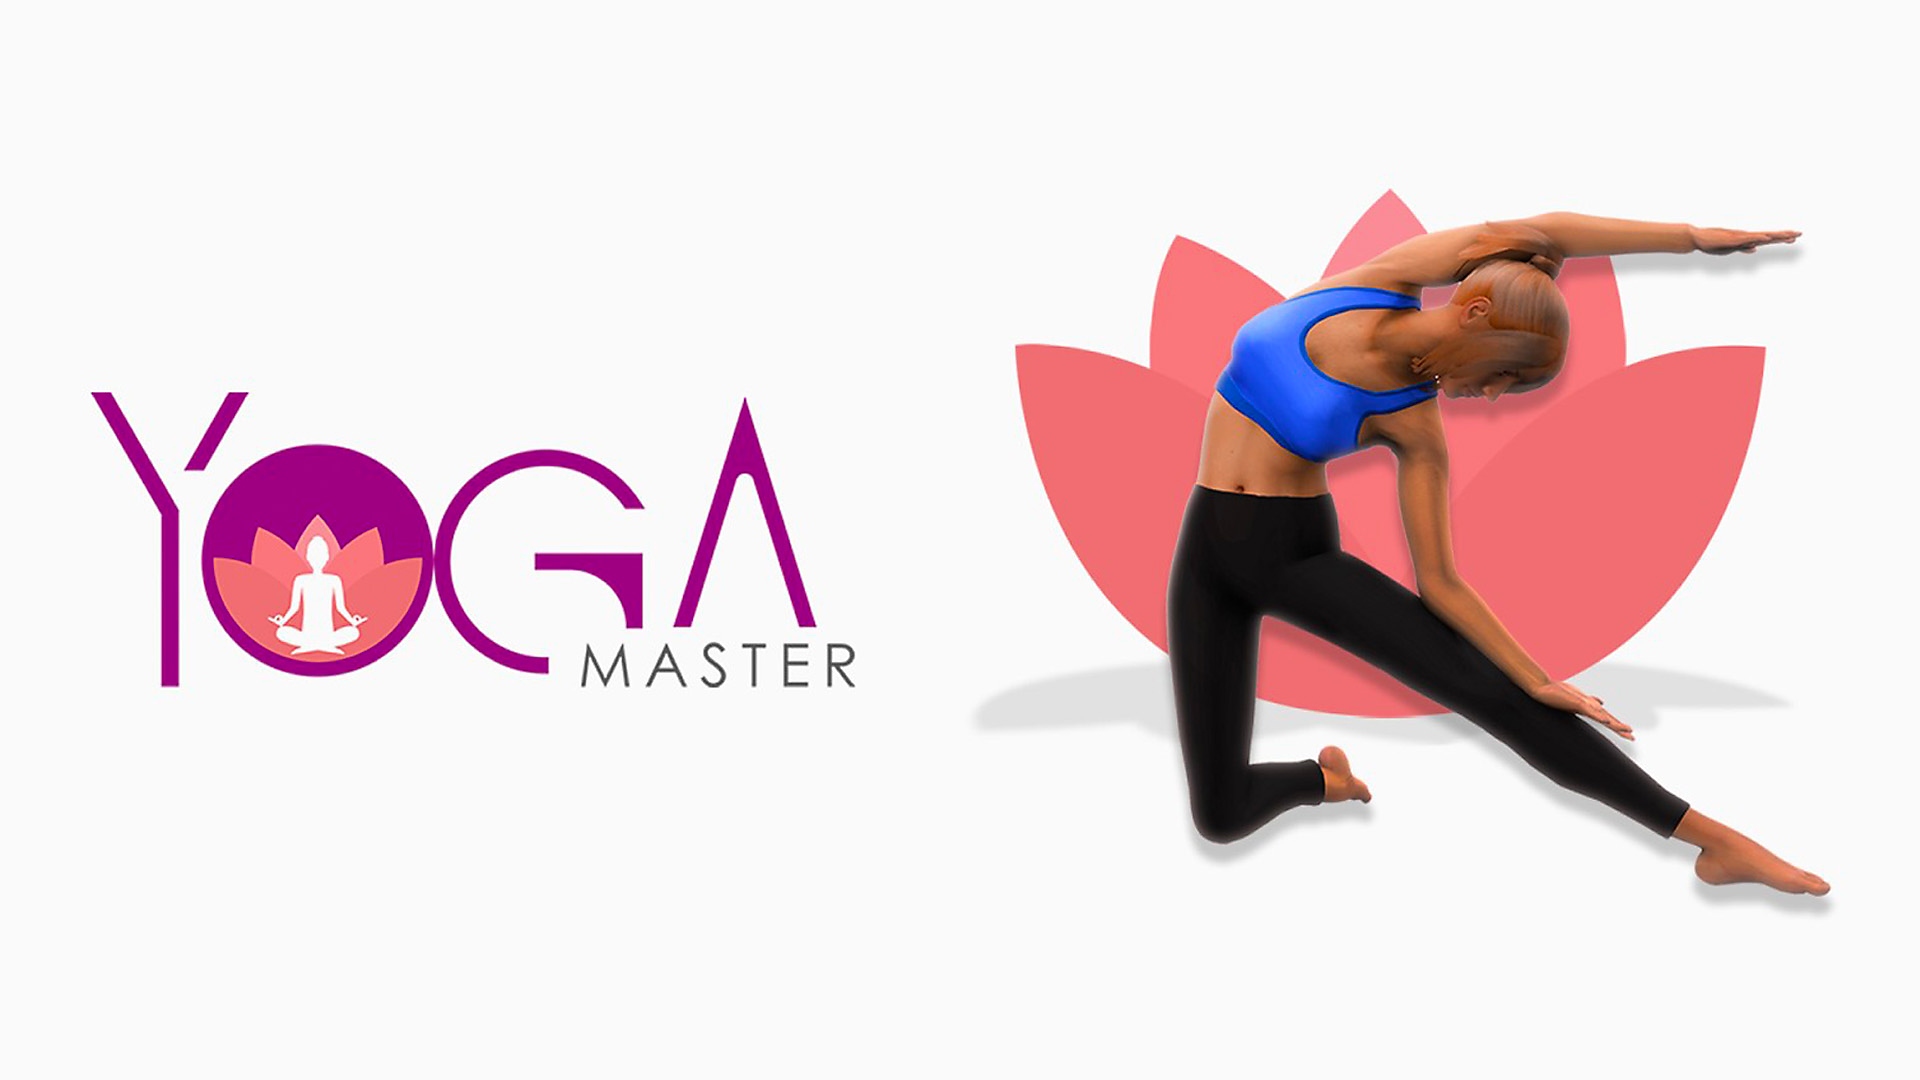 الصورة الفنية الأساسية للعبة Yoga Master